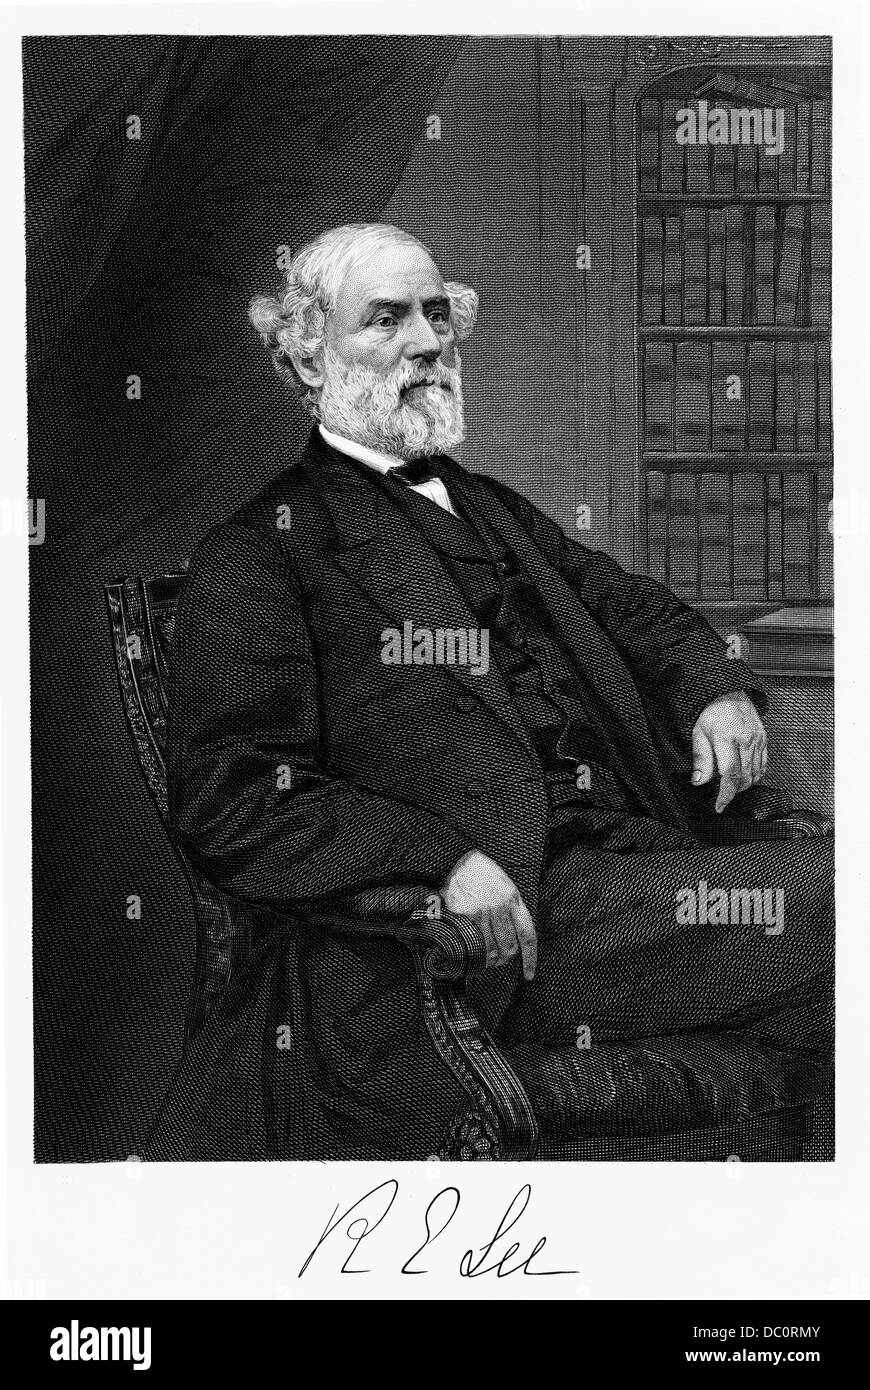 1800S 1860S PORTRAITE DES ROBERT E LEE KONFÖDERIERTEN GENERAL IM AMERIKANISCHEN BÜRGERKRIEG Stockfoto